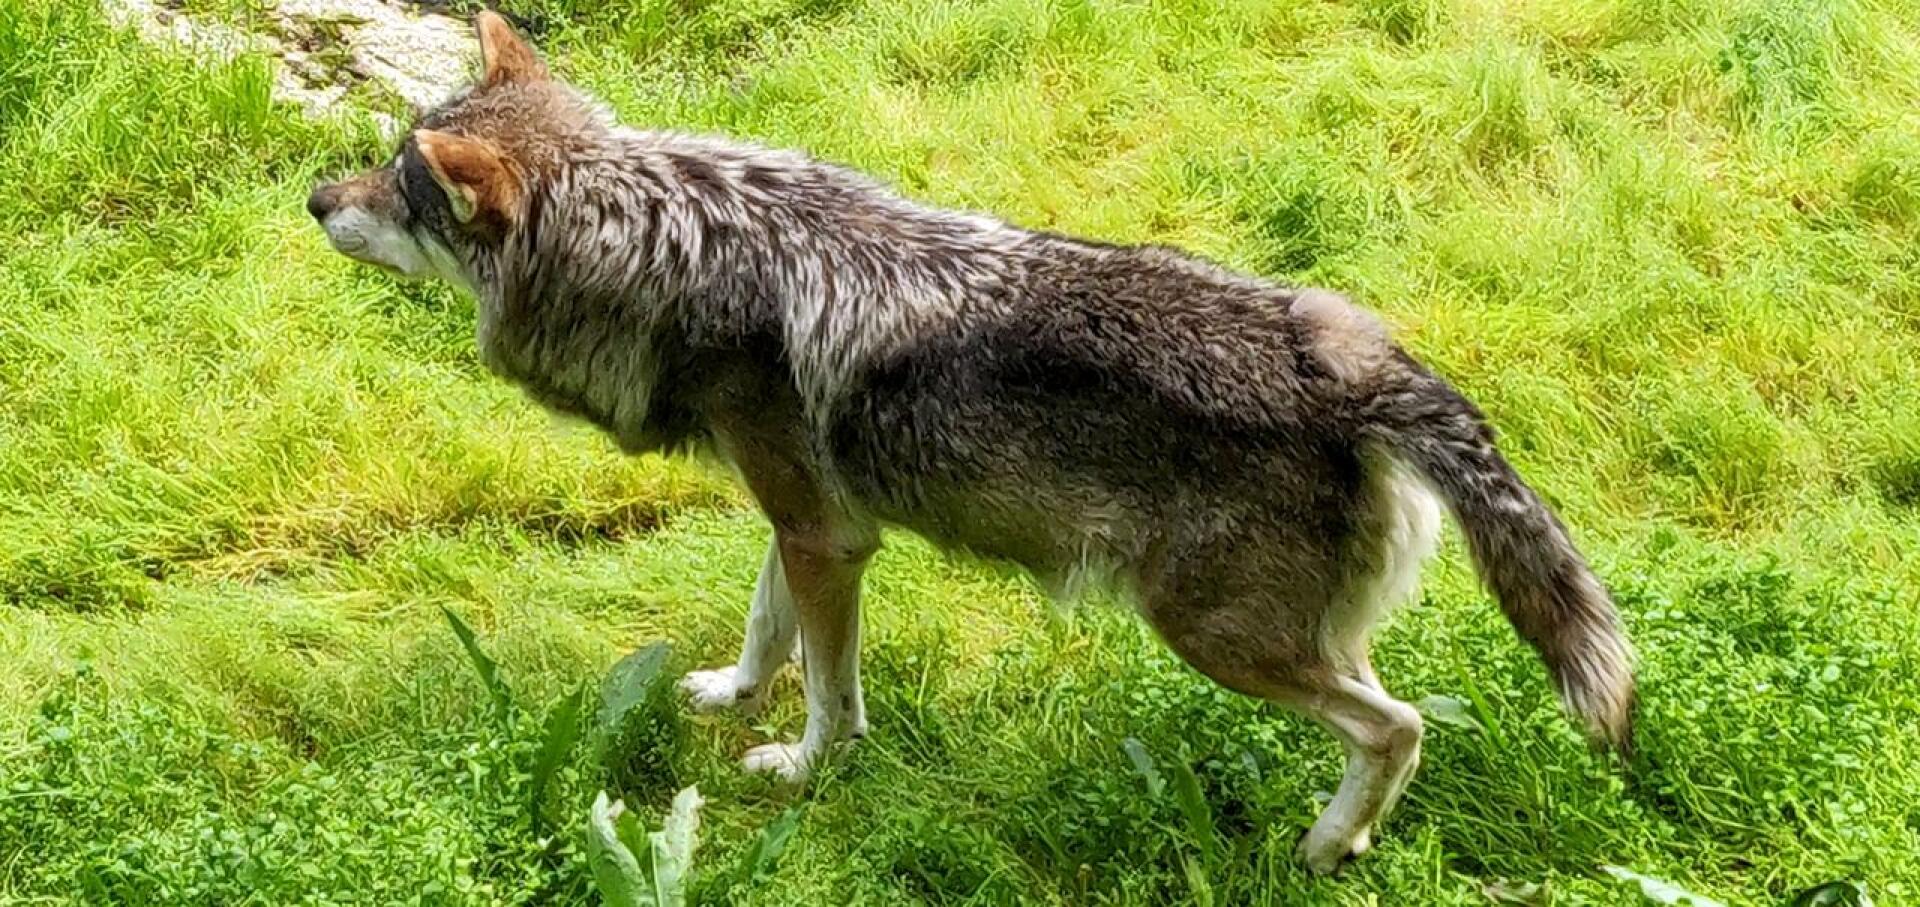 Sudet ovat hyökänneet koirien kimppuun Haapajärvellä ja sen lähialueilla useaan kertaan hirvijahdin alettua. Tämä susi on kuvattu Ähtärin eläinpuistossa.